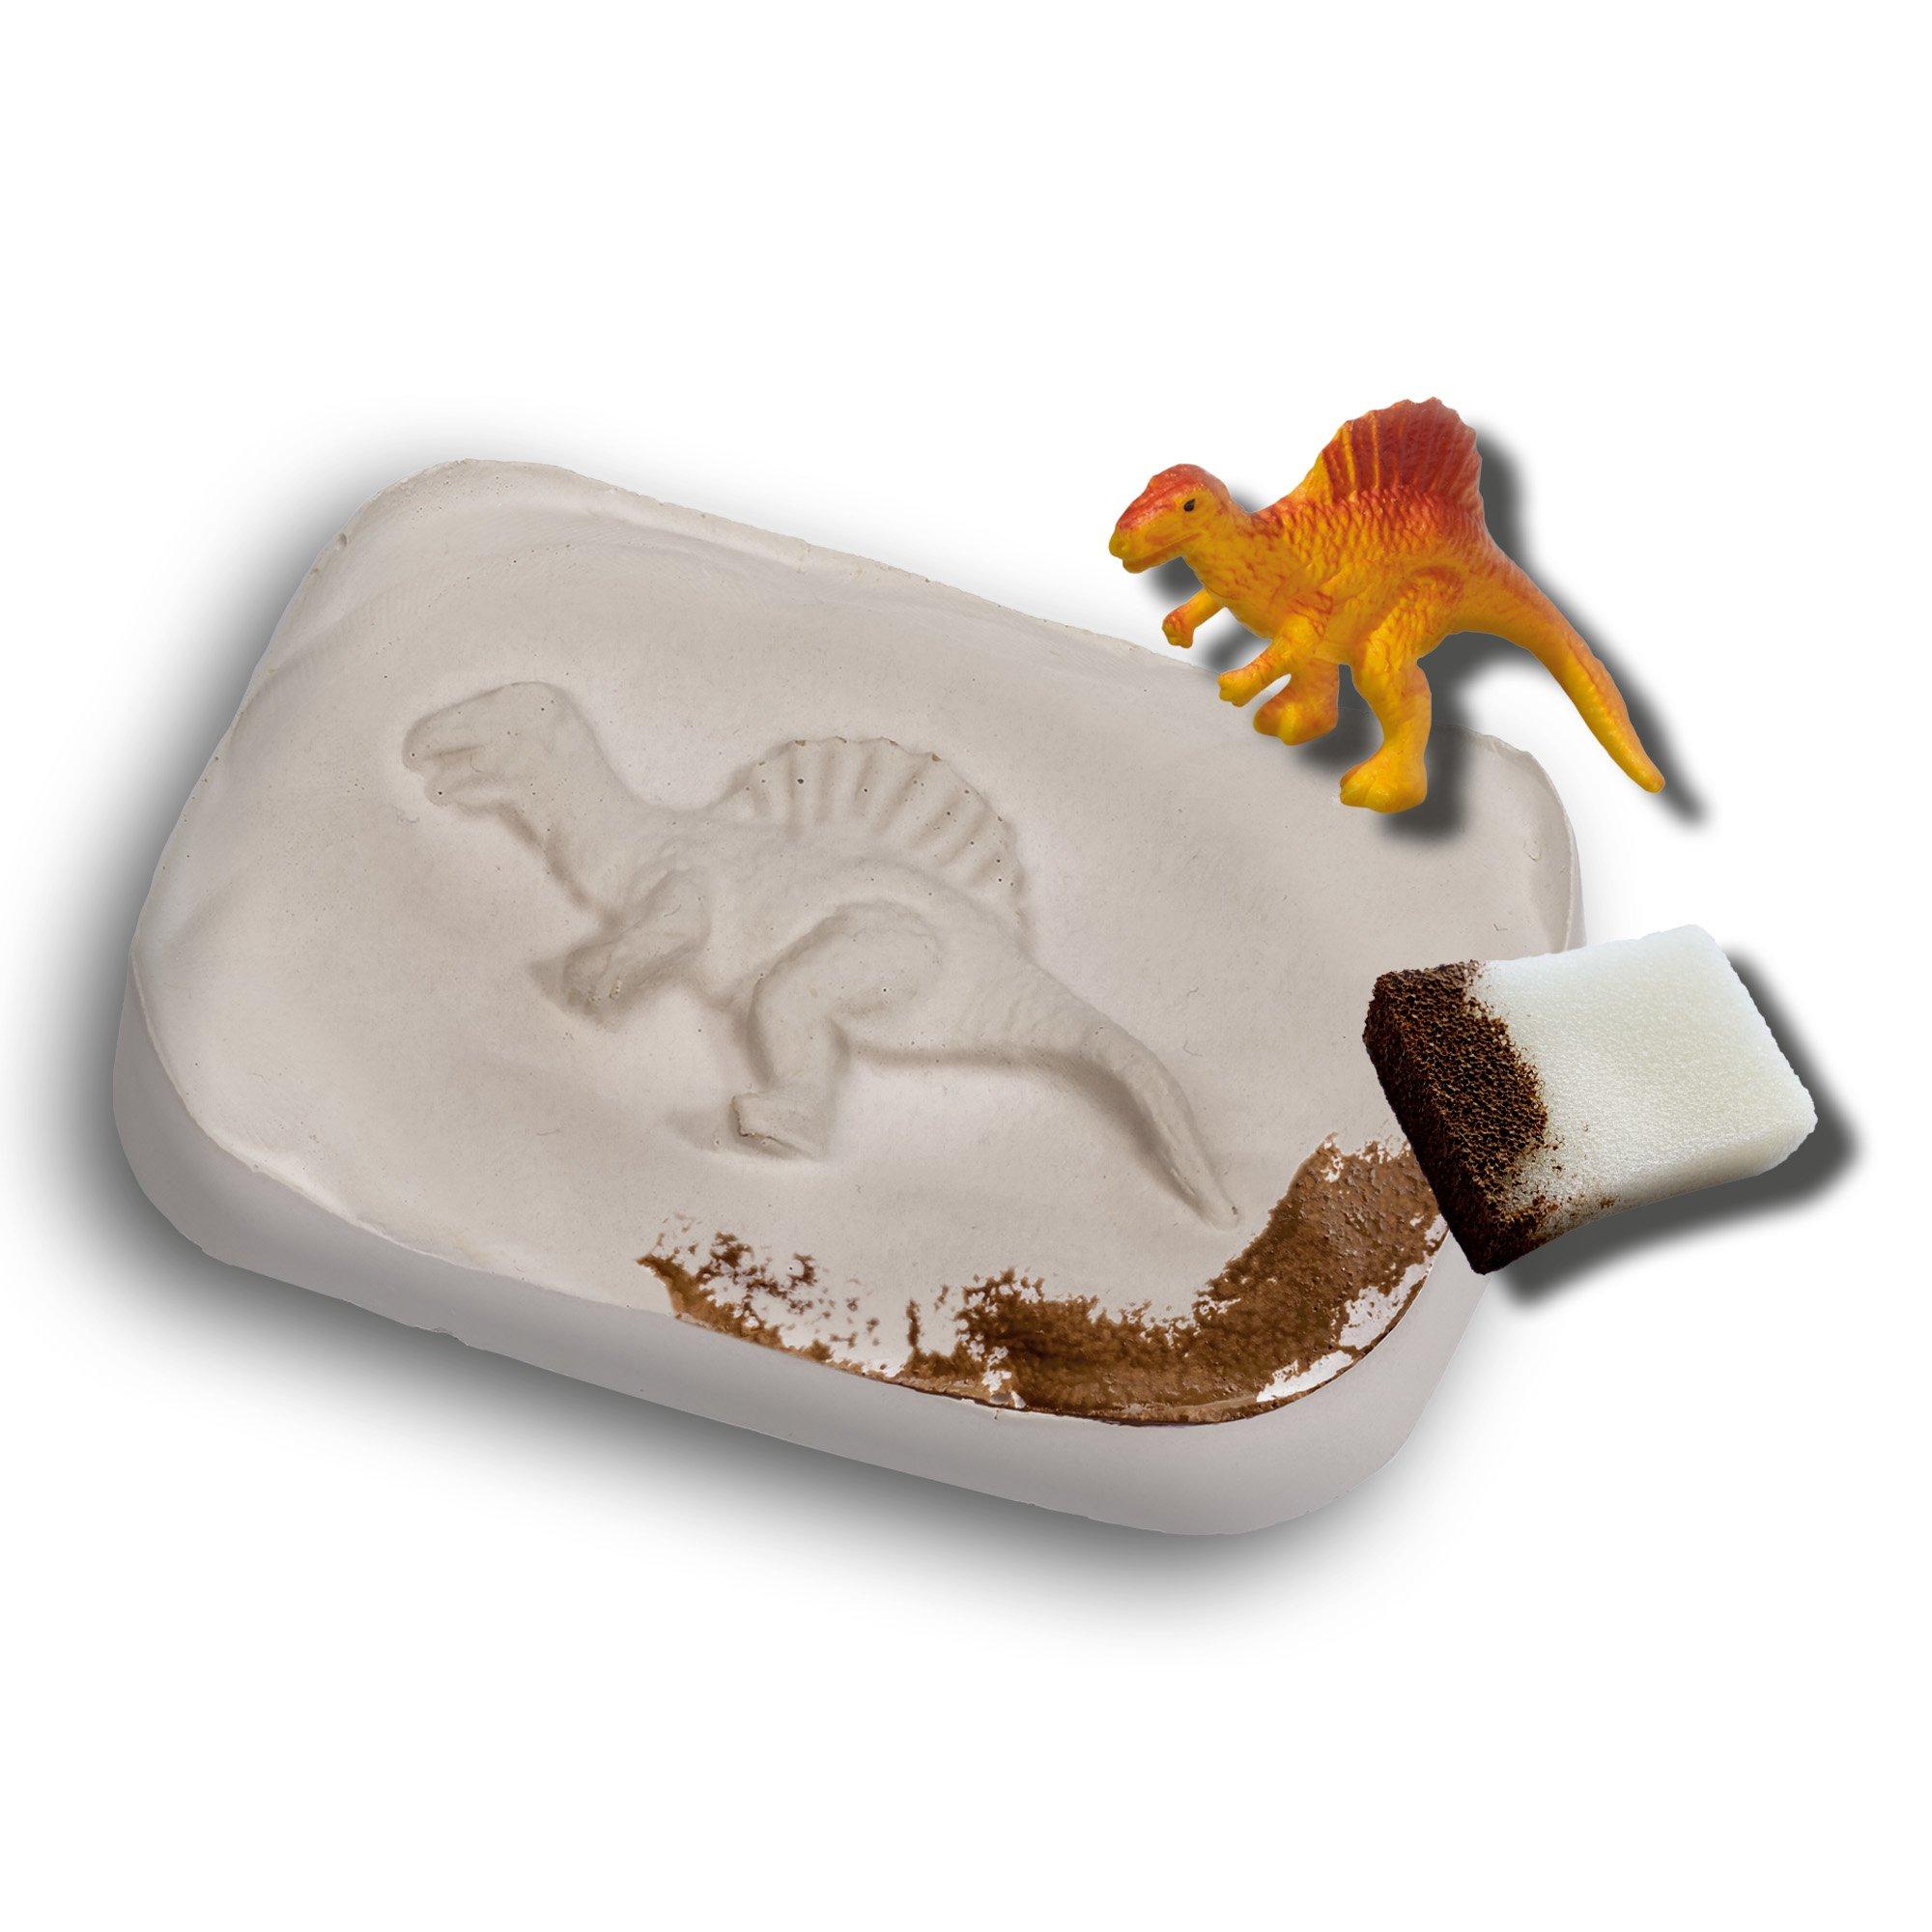 SES  Kreativ Dino Fossilien 